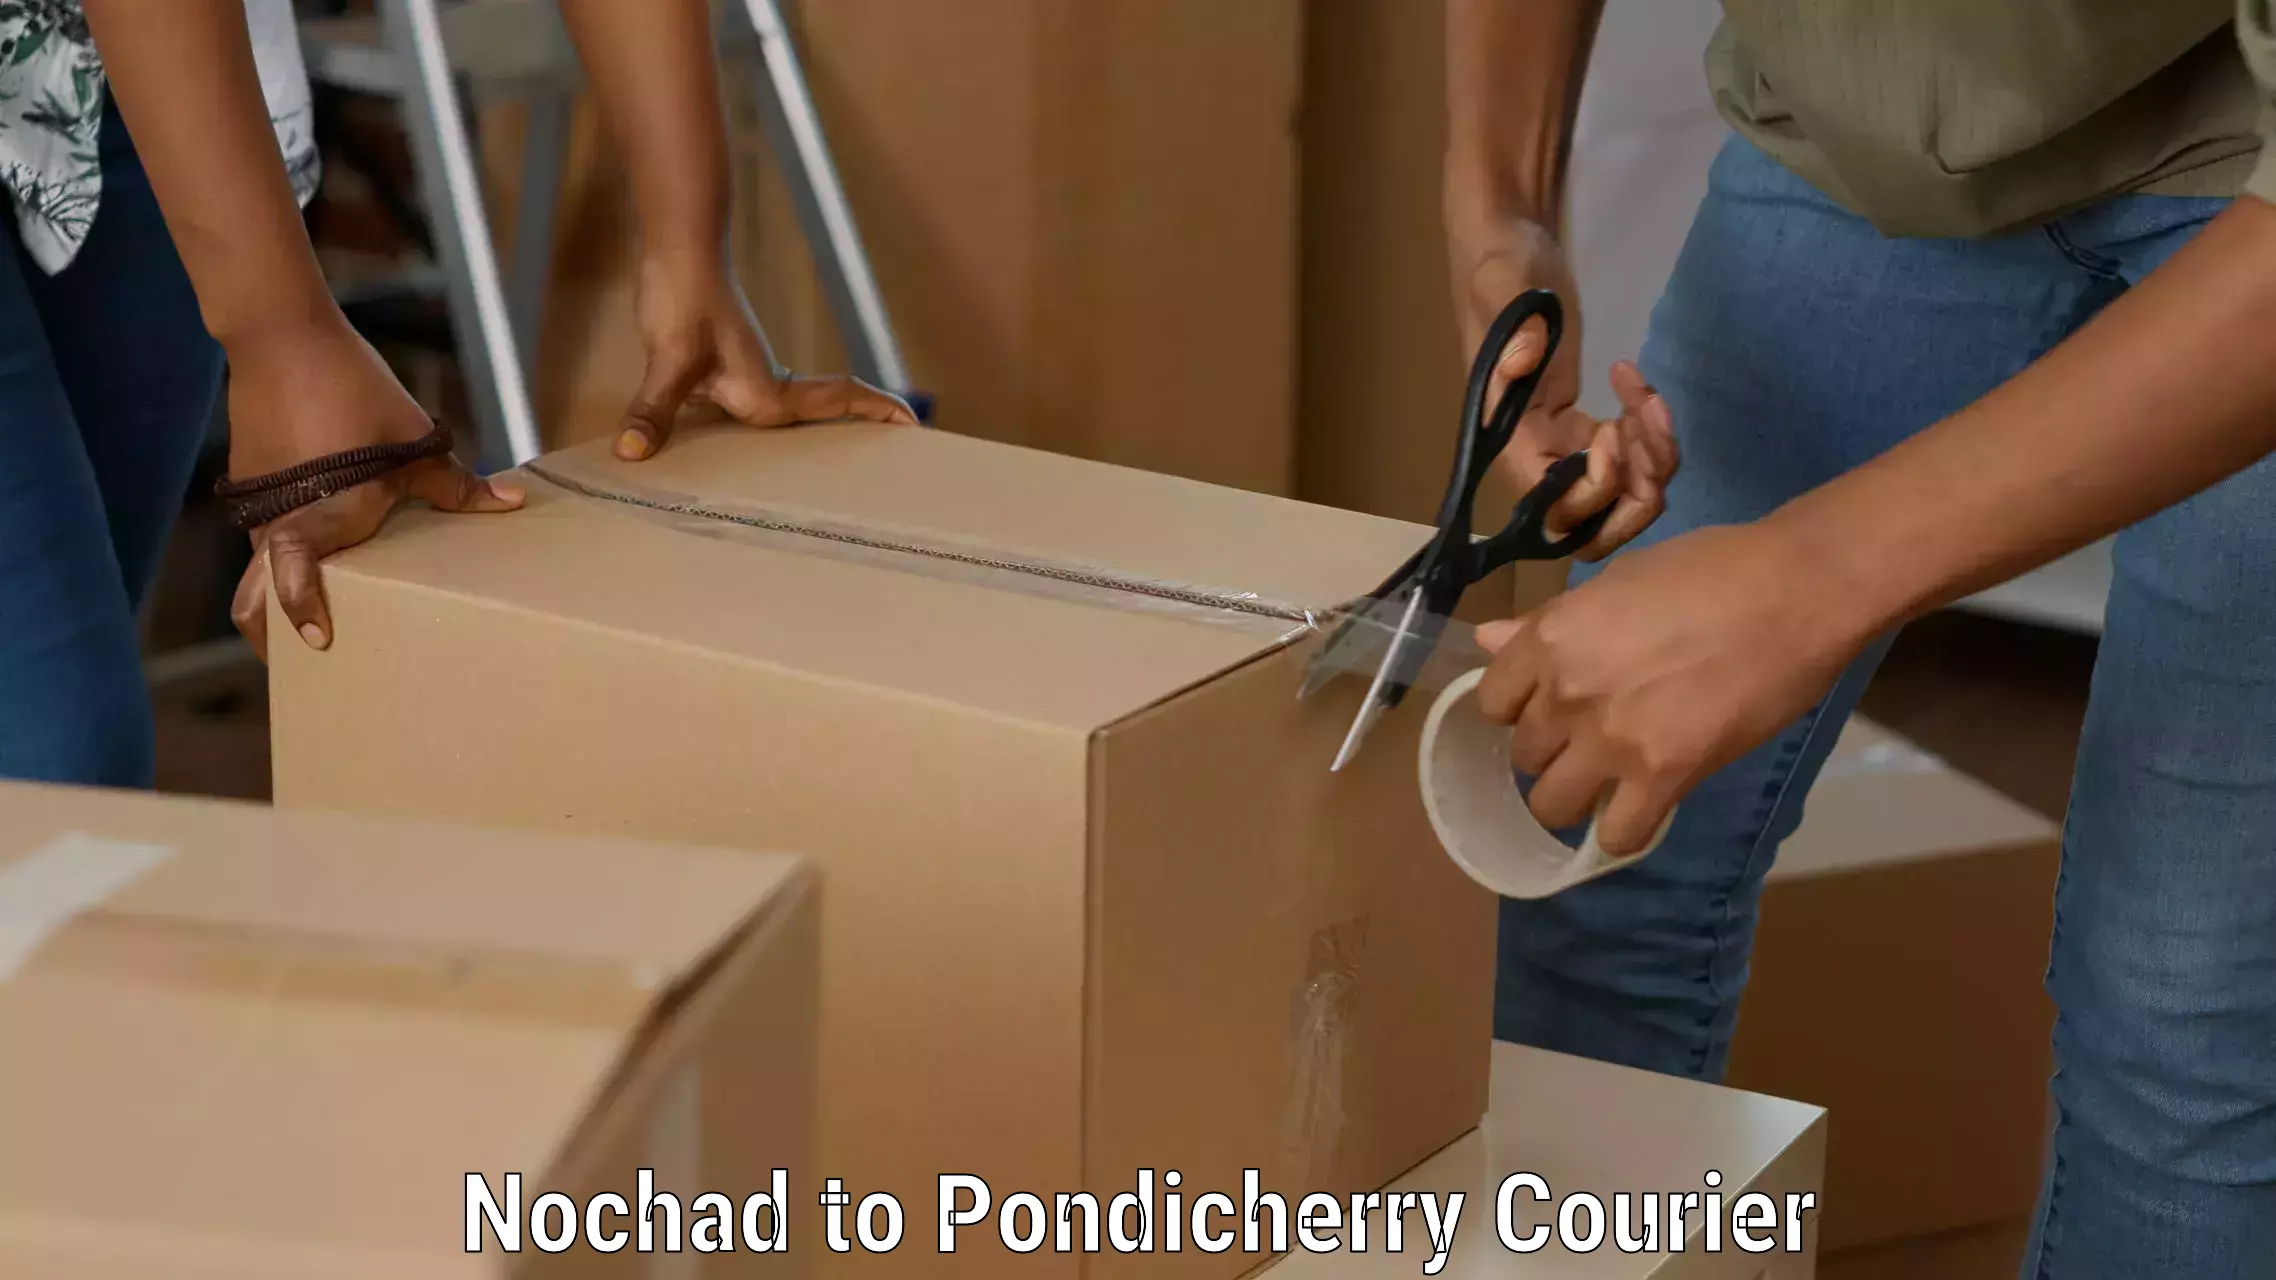 Cargo courier service Nochad to Pondicherry